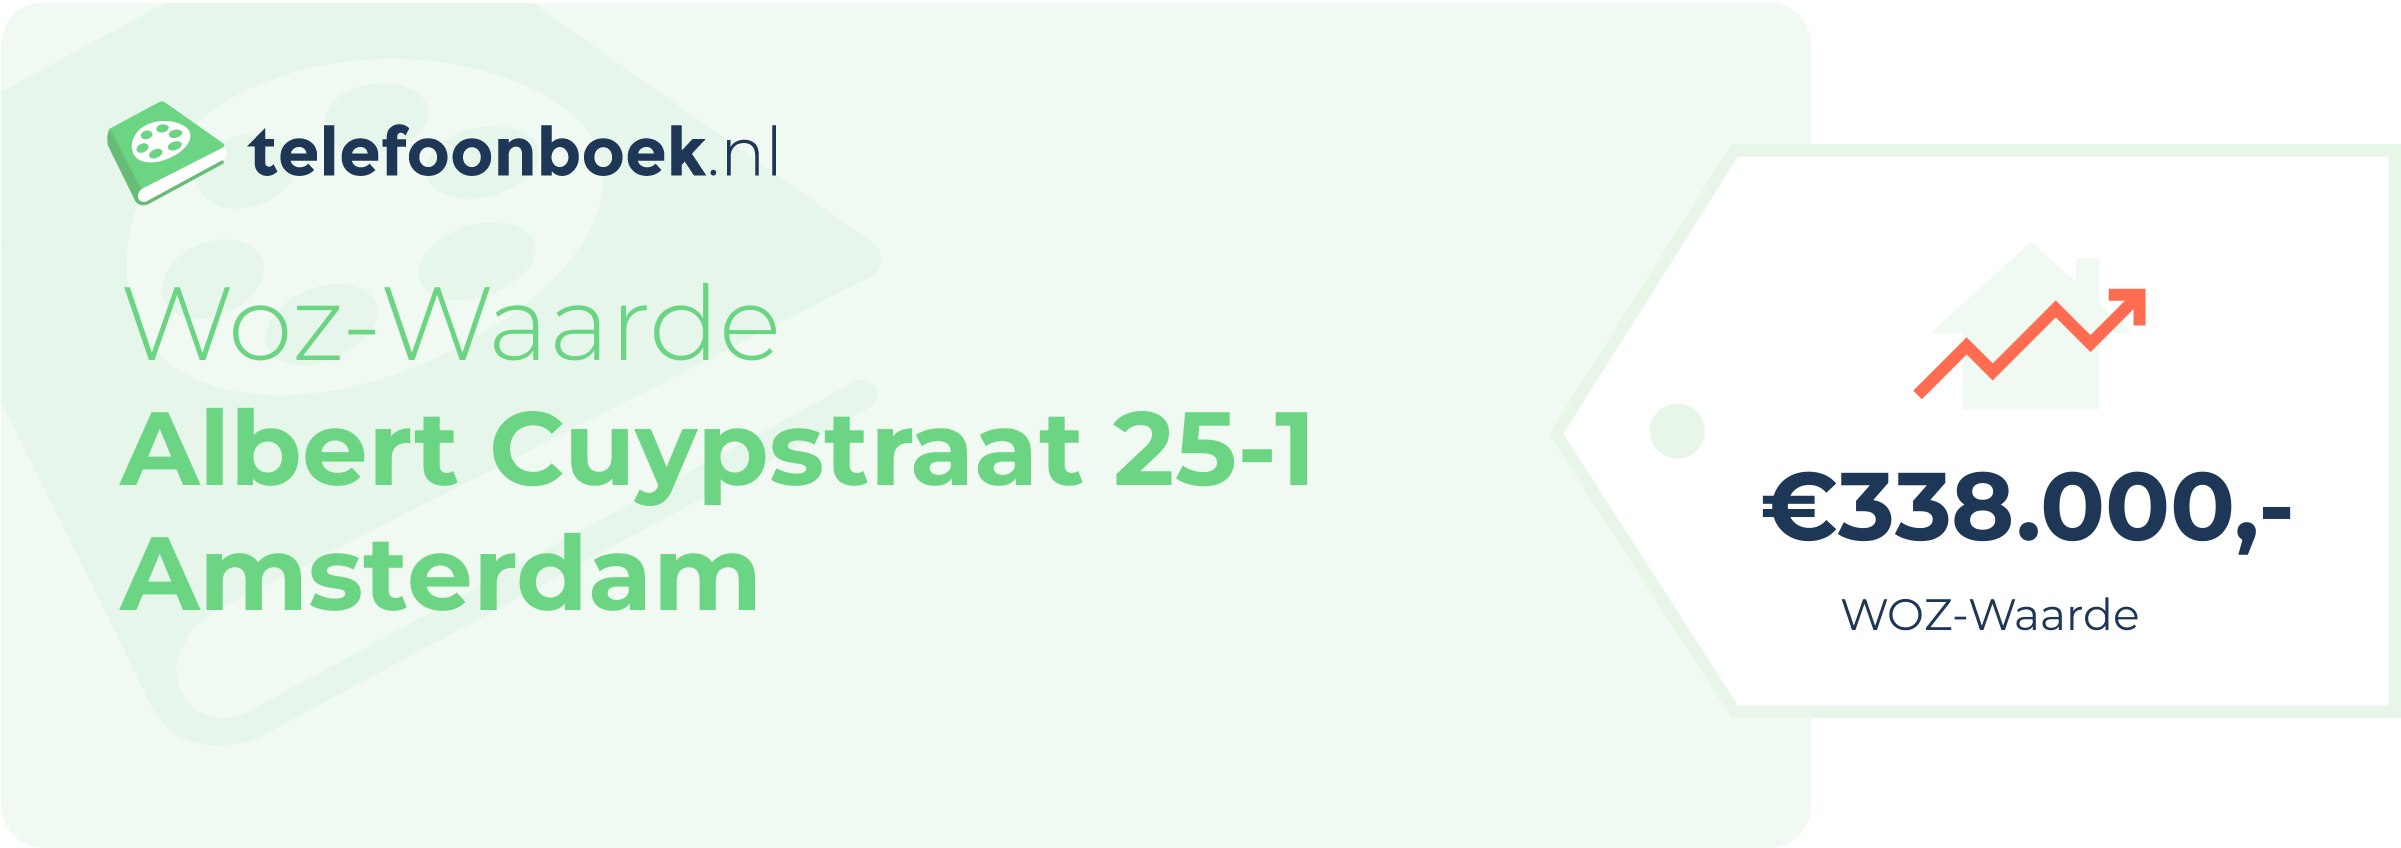 WOZ-waarde Albert Cuypstraat 25-1 Amsterdam